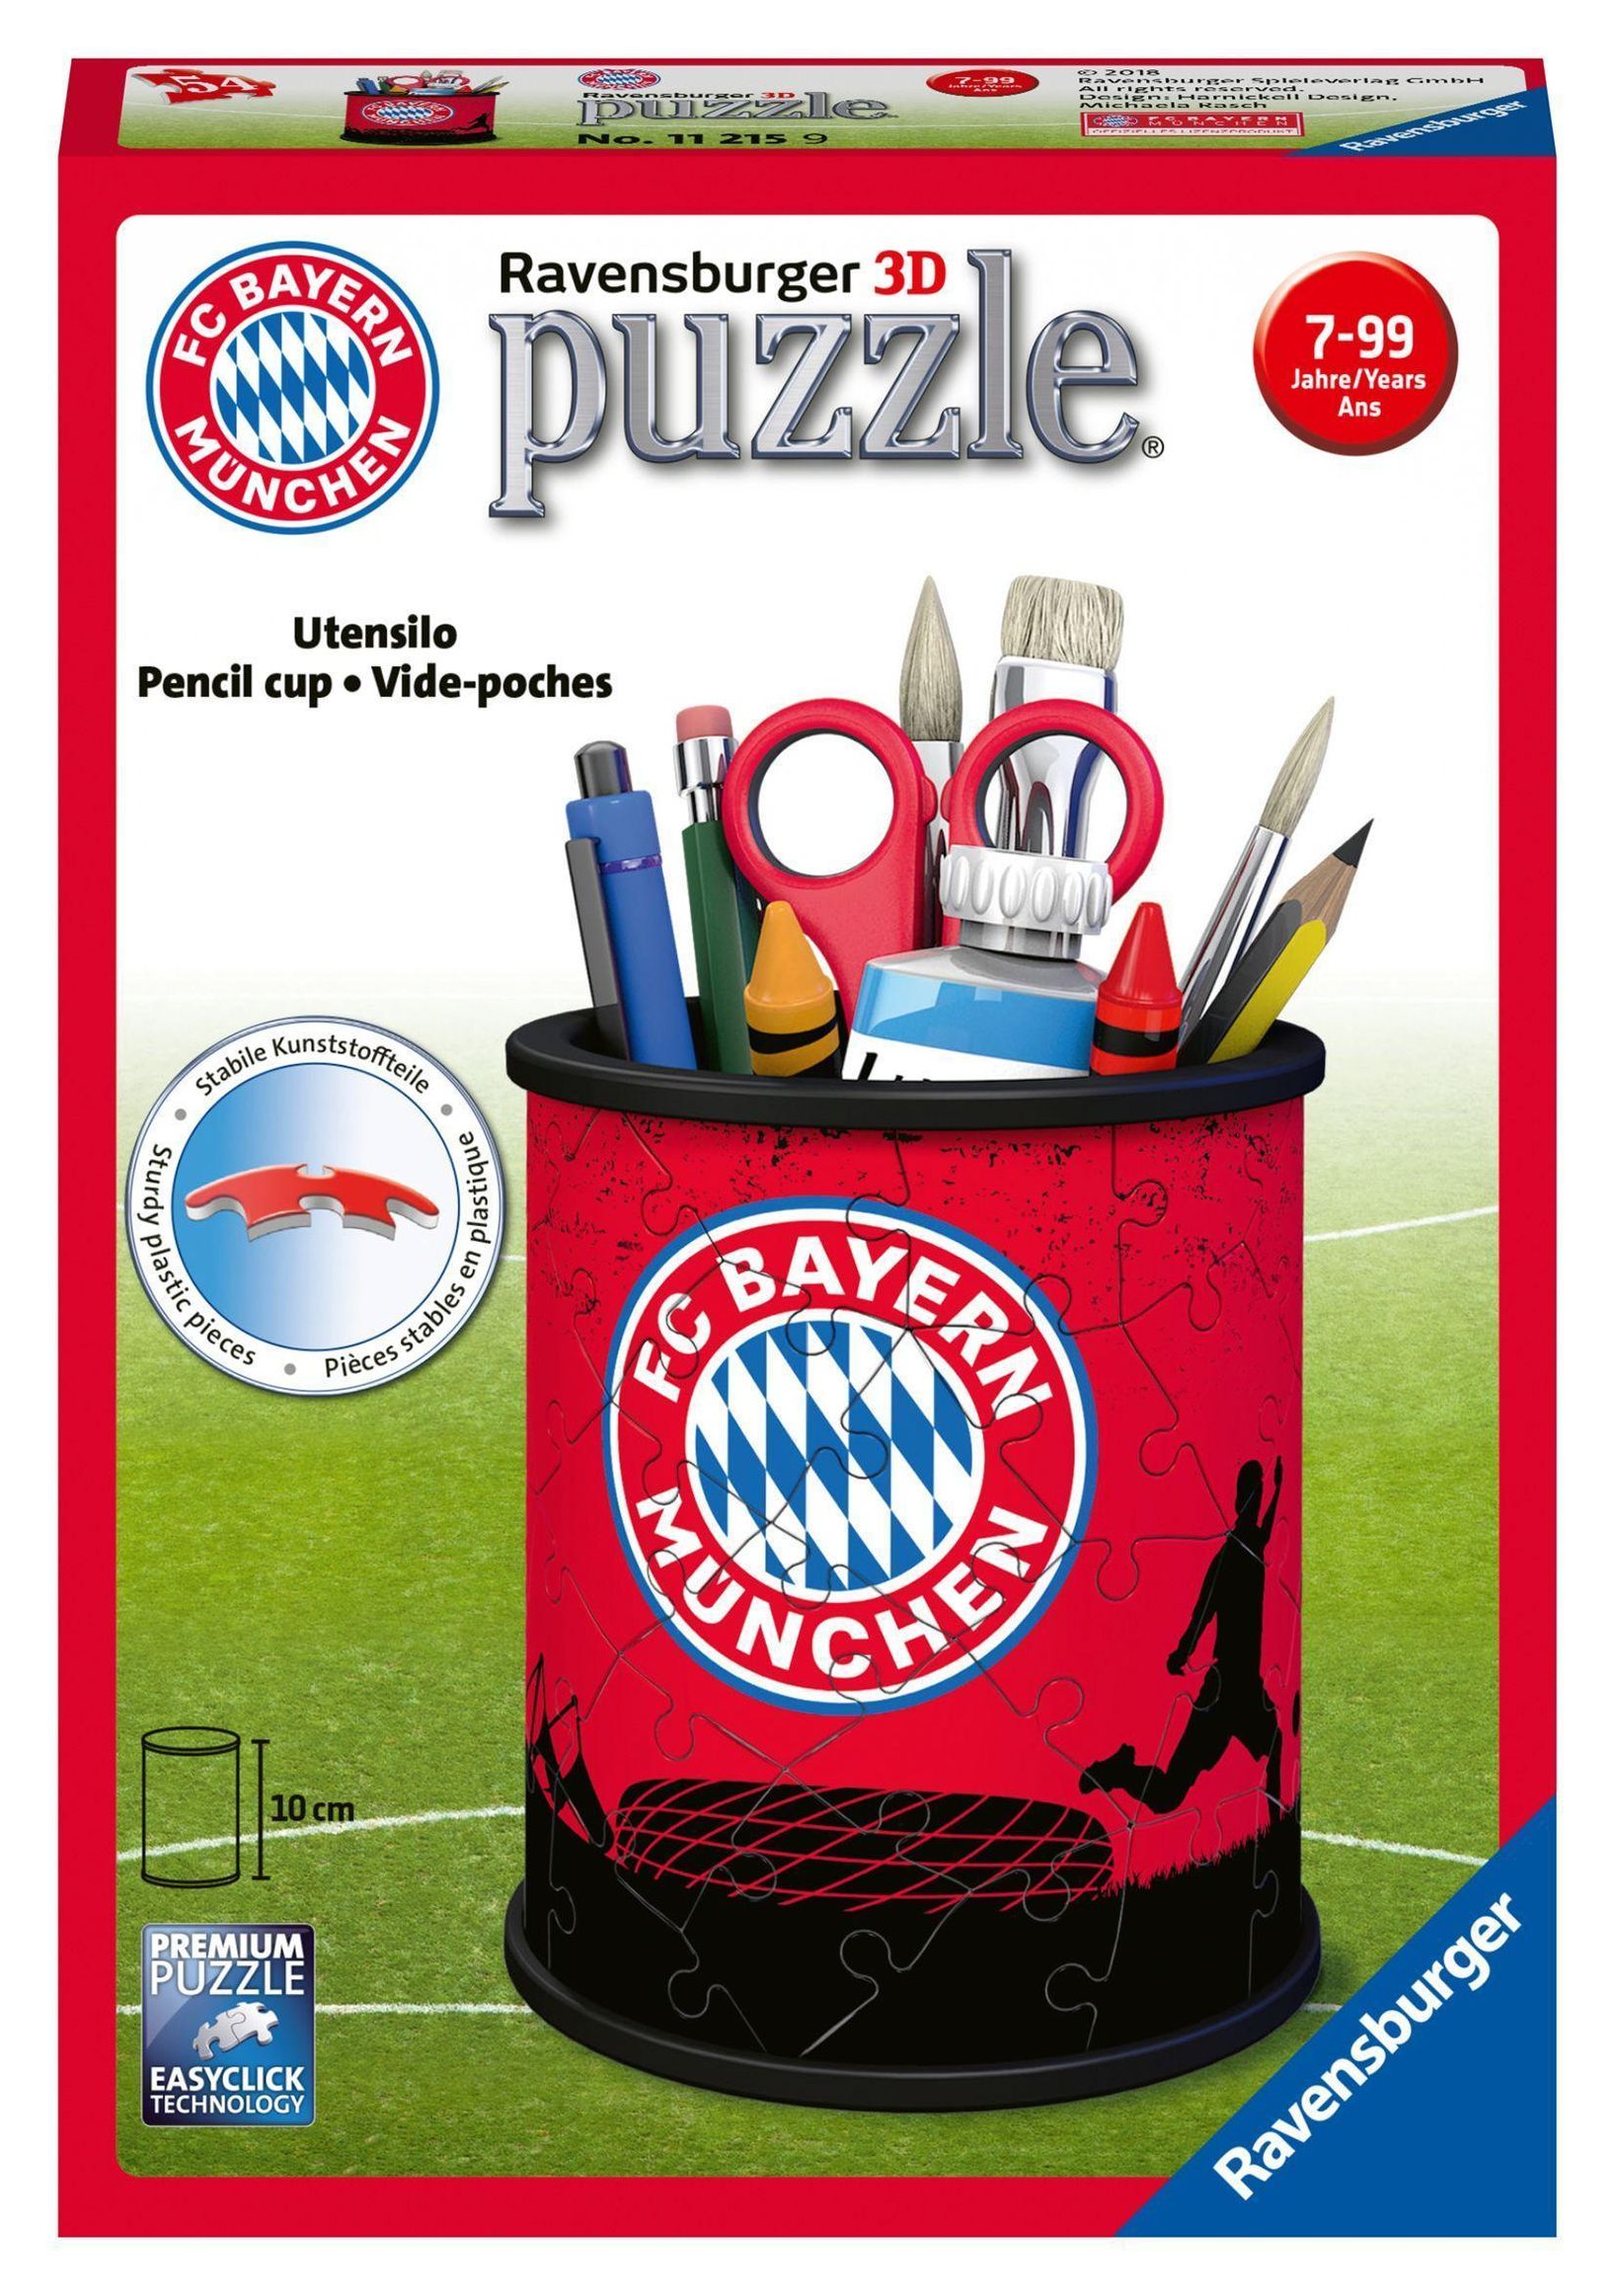 Ravensburger 3D Puzzle 11215 - Utensilo FC Bayern - 54 Teile - Stiftehalter  für FC Bayern München Fans ab 6 Jahren, Schr | Weltbild.ch